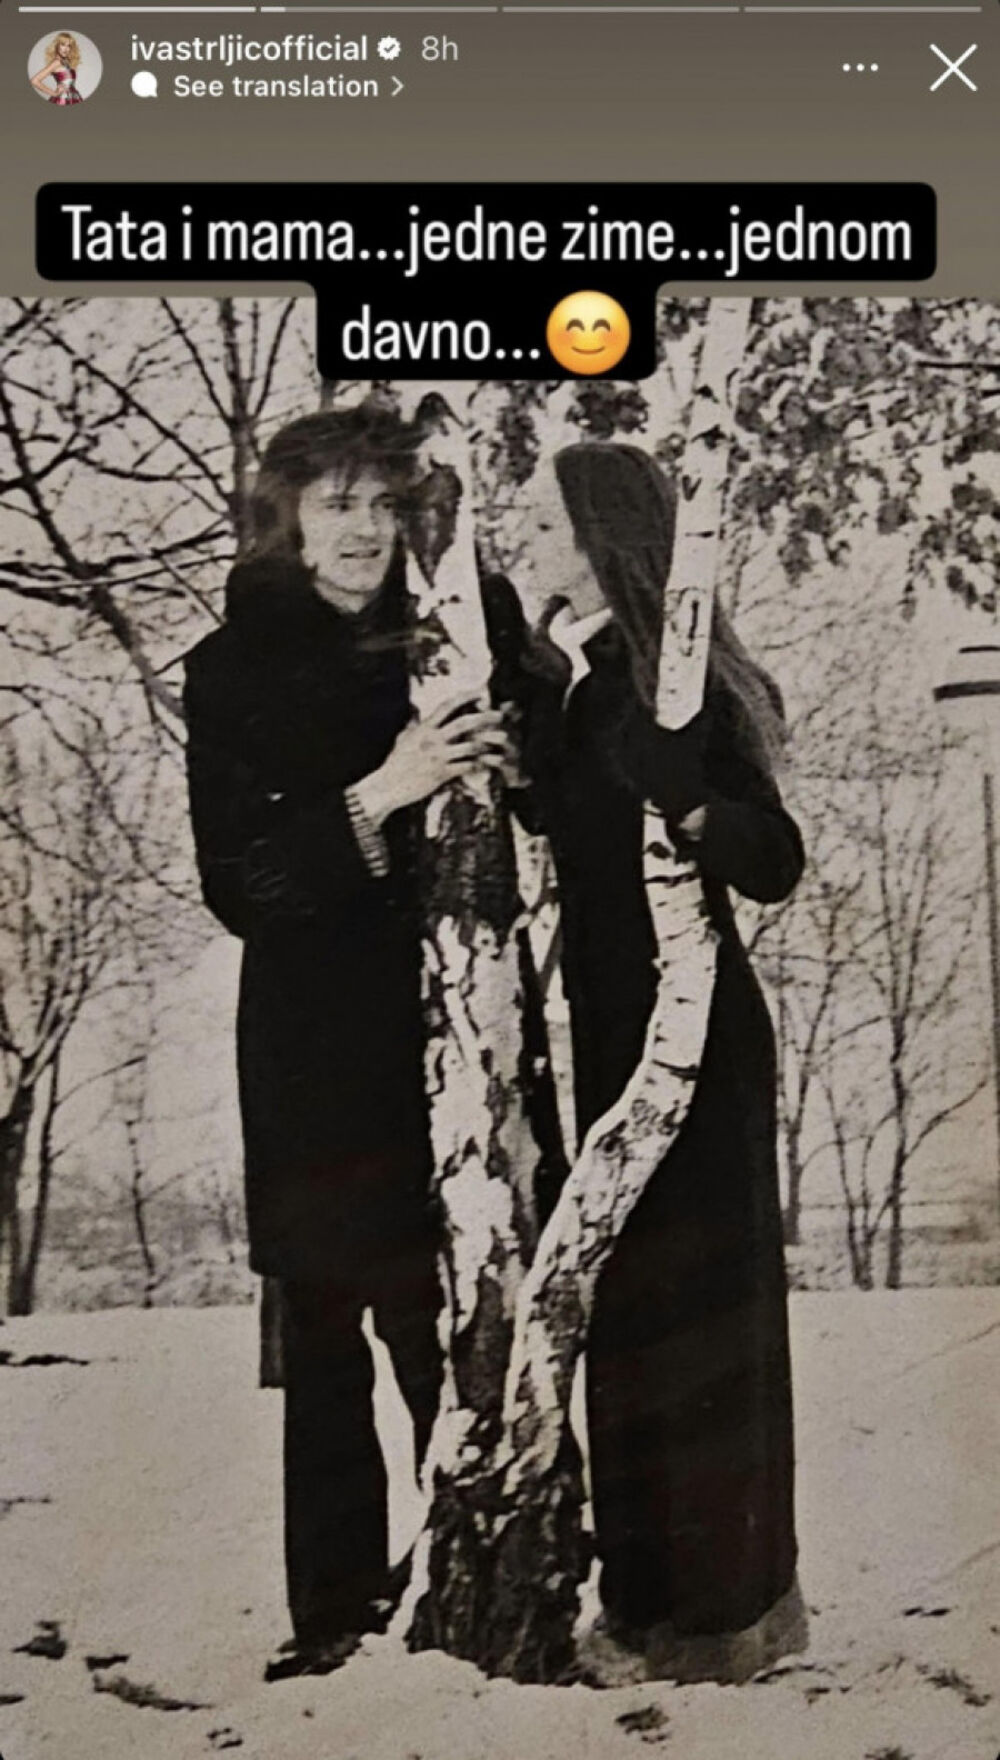   „Tata i mama... jedne zime... jednom davno“, napisala je uz crno-belu fotografiju na kojoj vidimo mladi, zaljubljeni par.